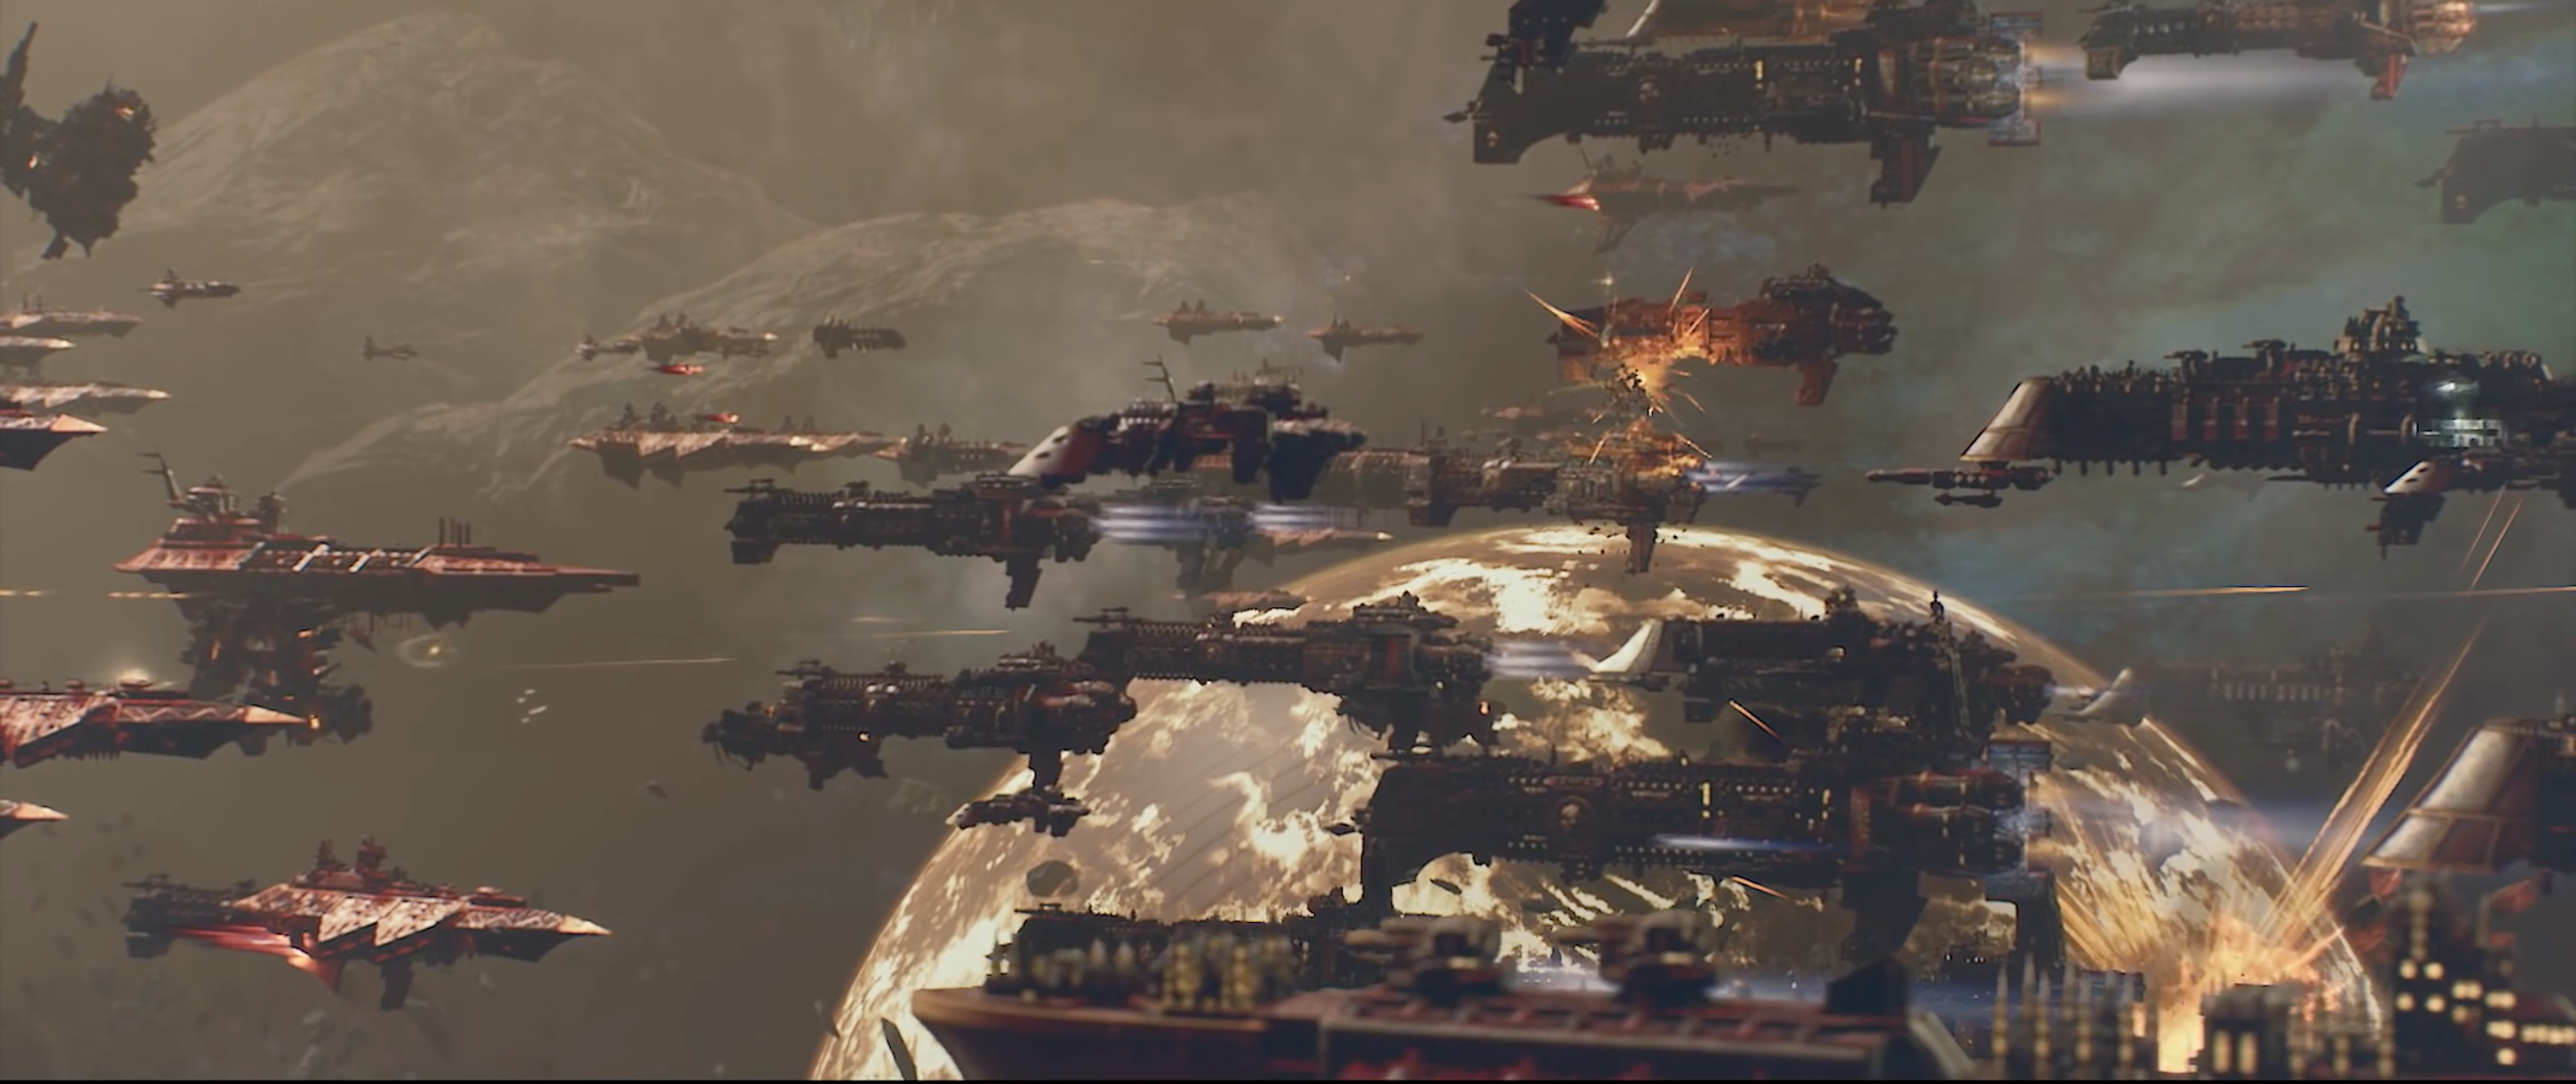 Battlefleet Gothic: Armada 2 image 2